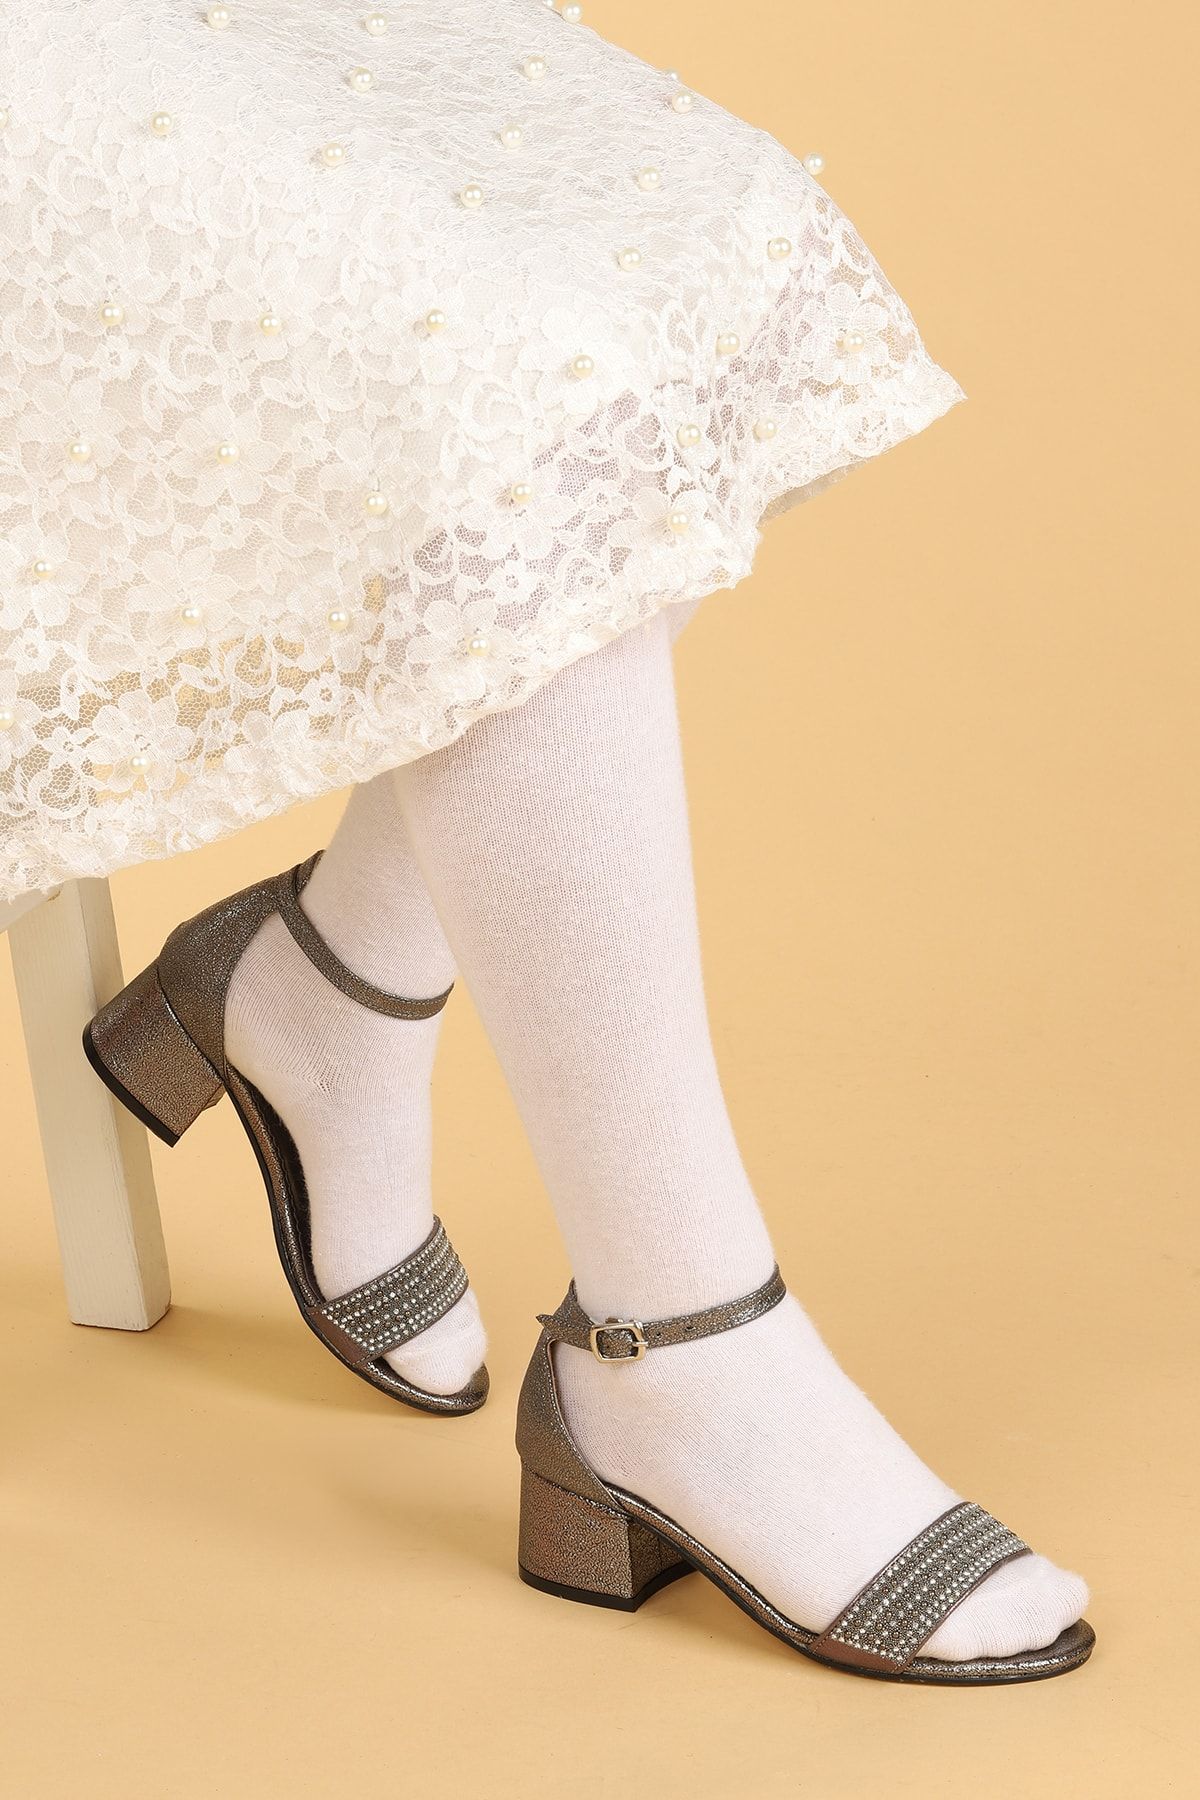 Kiko Kids Kız Çocuk Platin Abiye Ayakkabı 3 Cm Topuklu Sandalet Simli Bilekten Bantlı 768